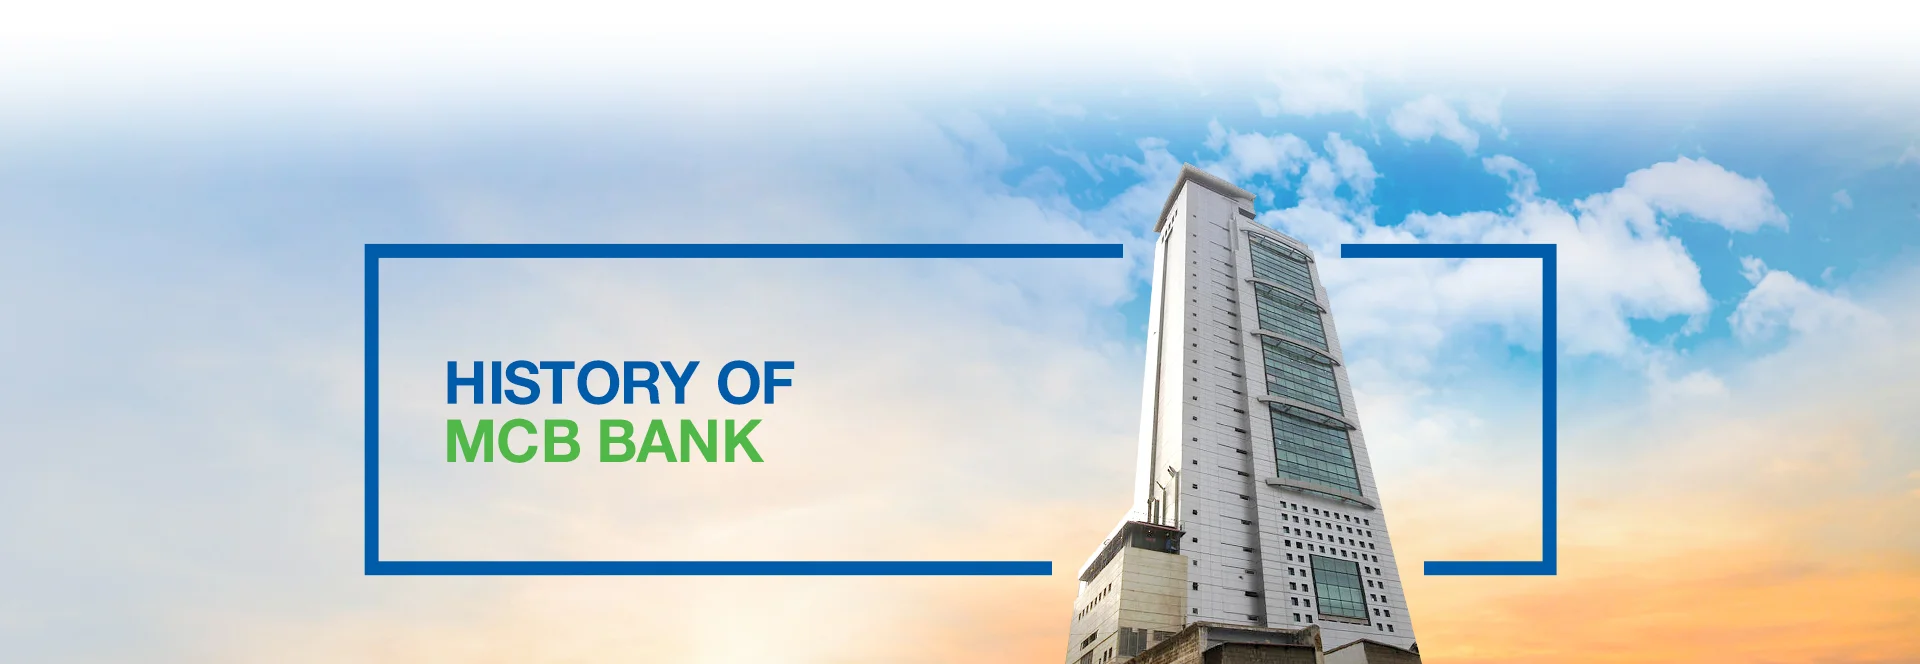 History of MCB Bank